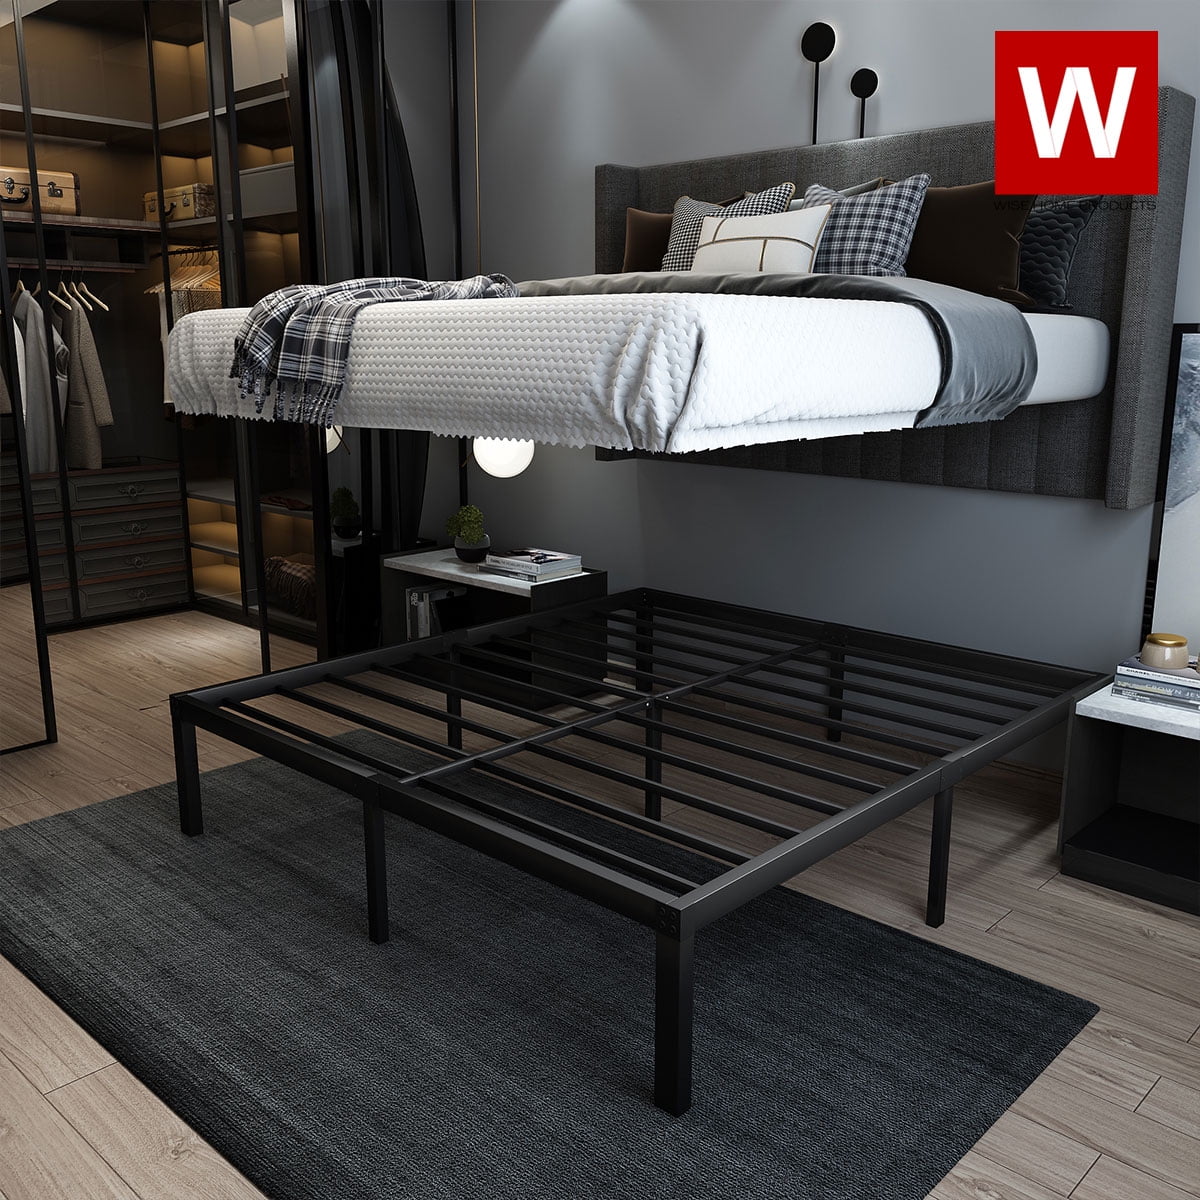 King Size Metal Platform Bed Frame With, King Size Bed Storage Frame